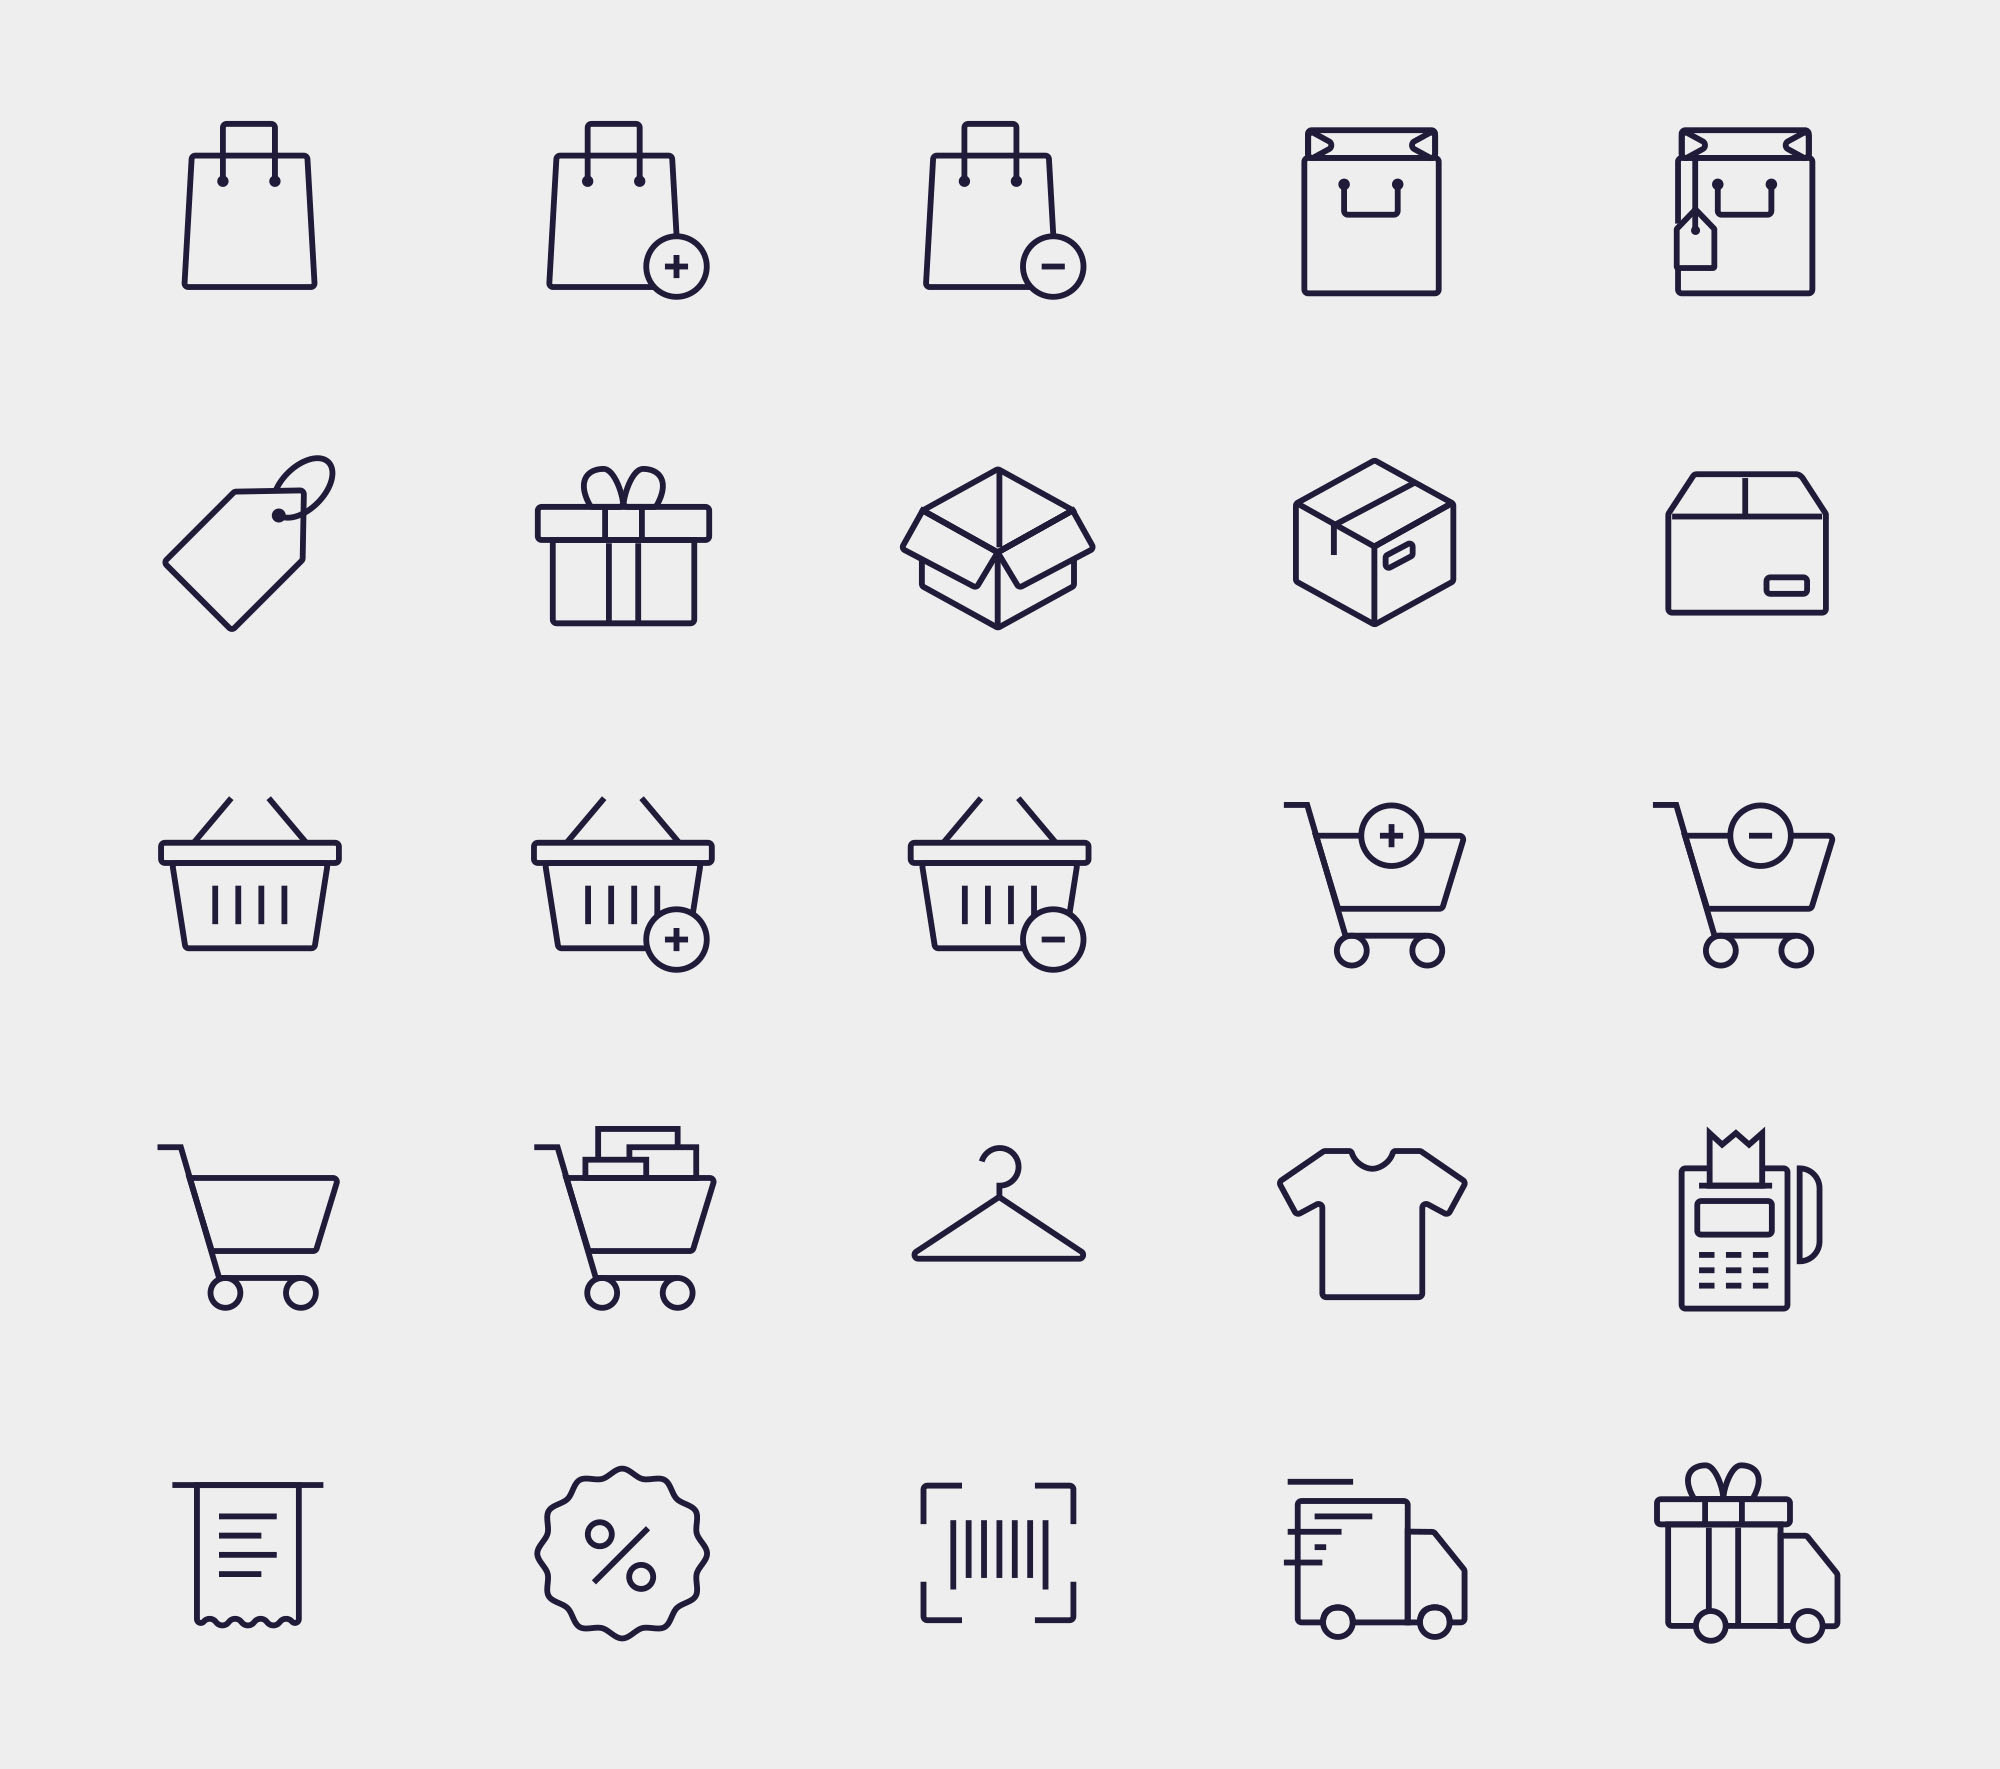 购物主题矢量图标设计素材 Vector Shopping Icons插图(2)